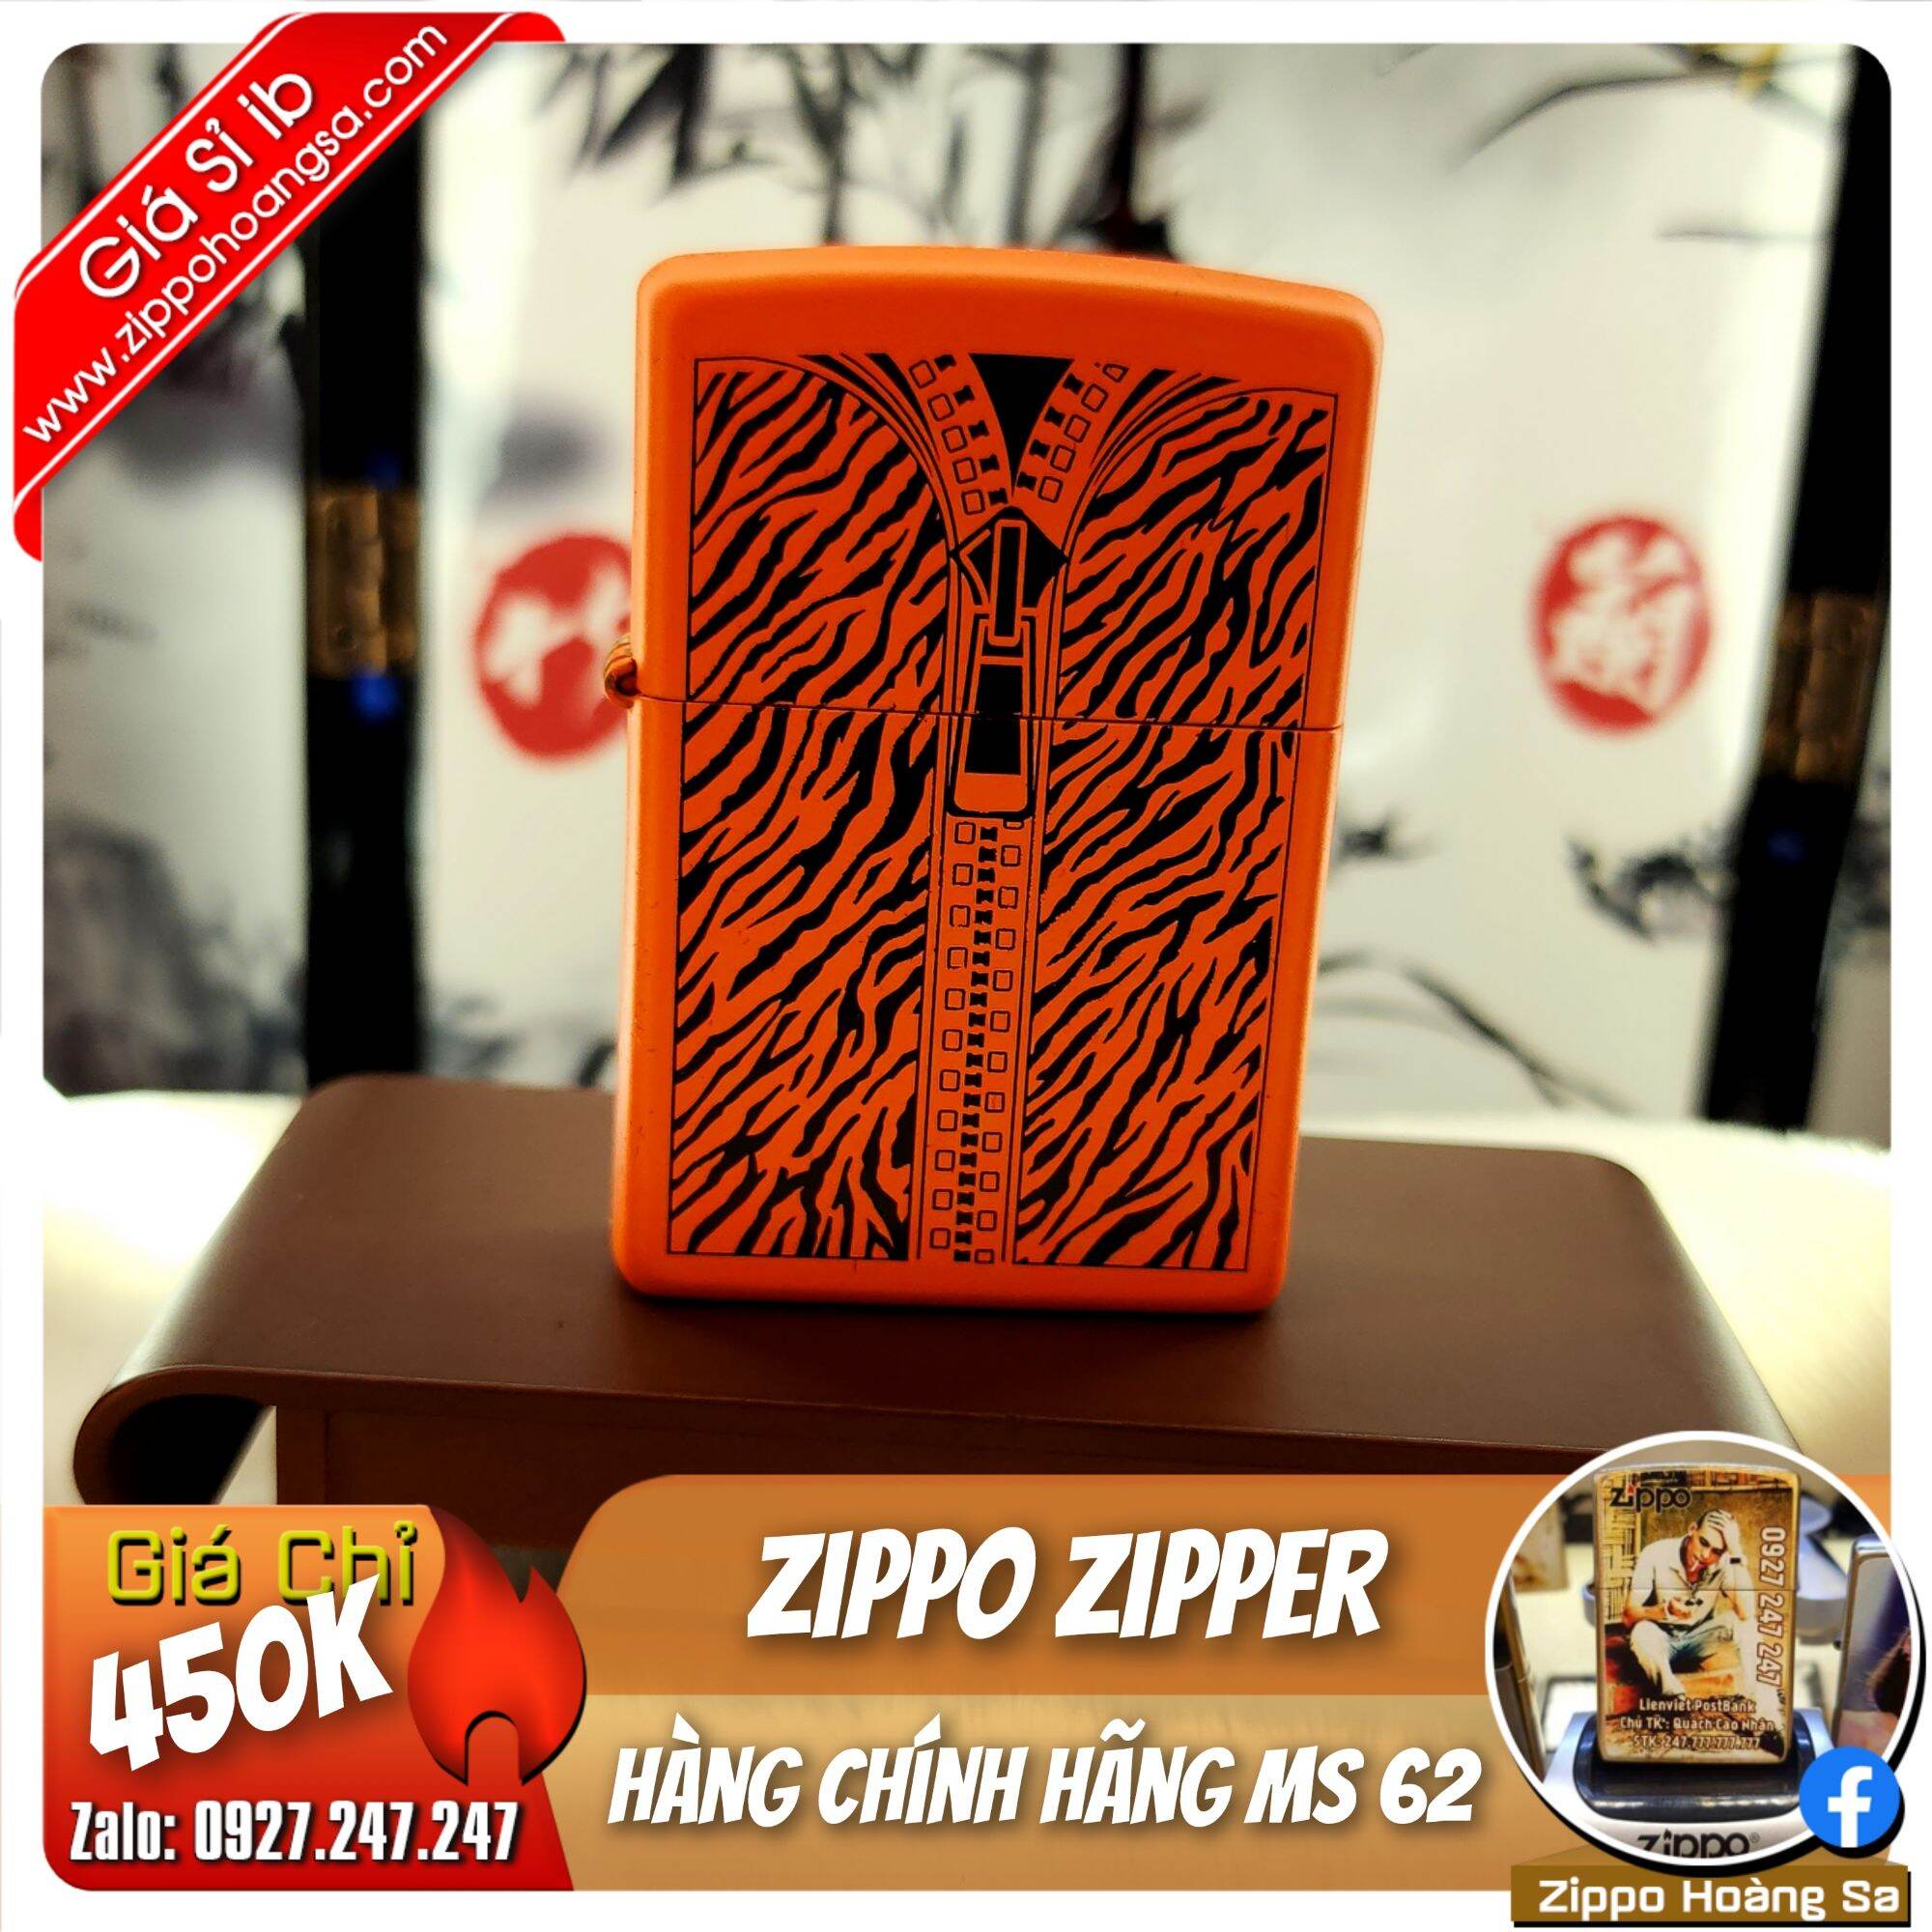 Zippo Zipper - Bật lửa chính hãng zippo MS 62